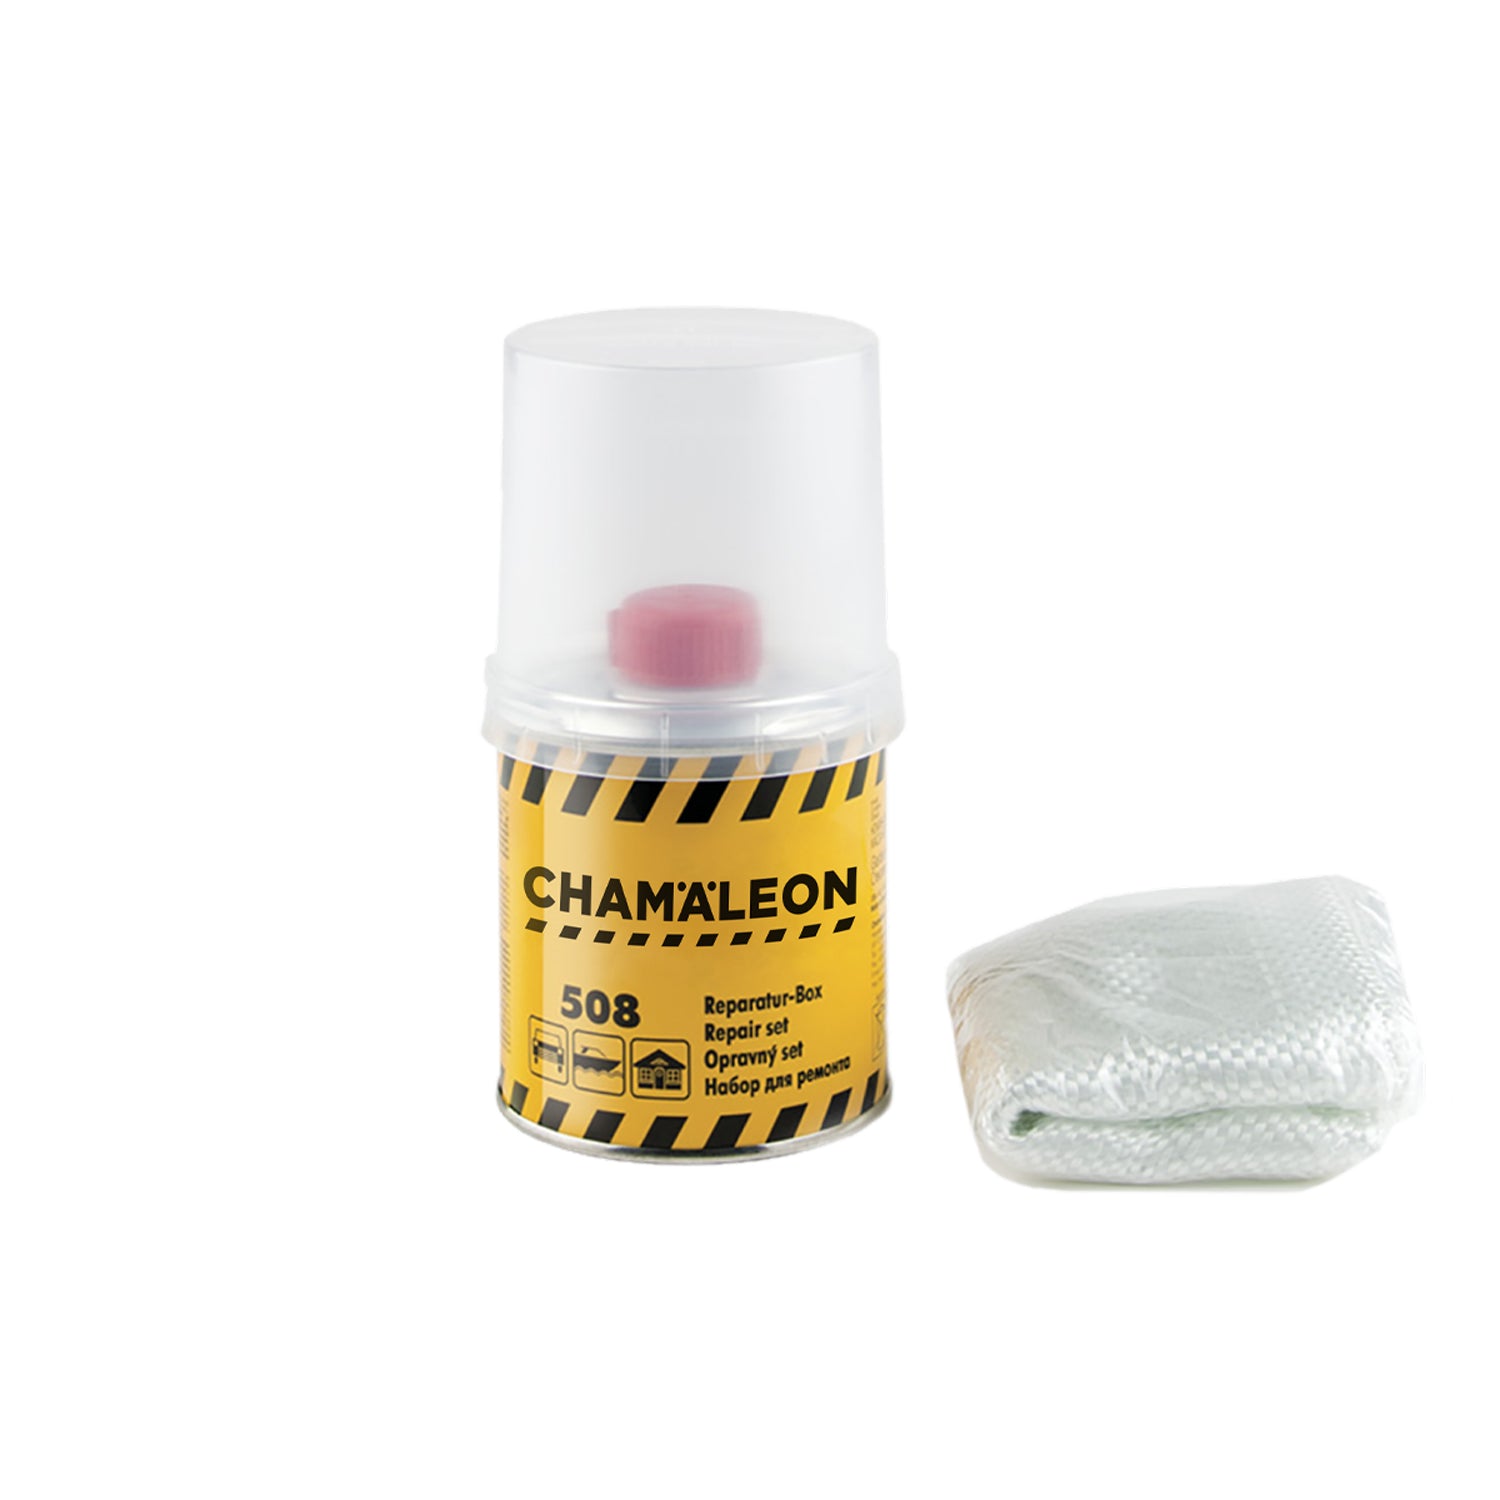 CHAMALEON Repair Box 508